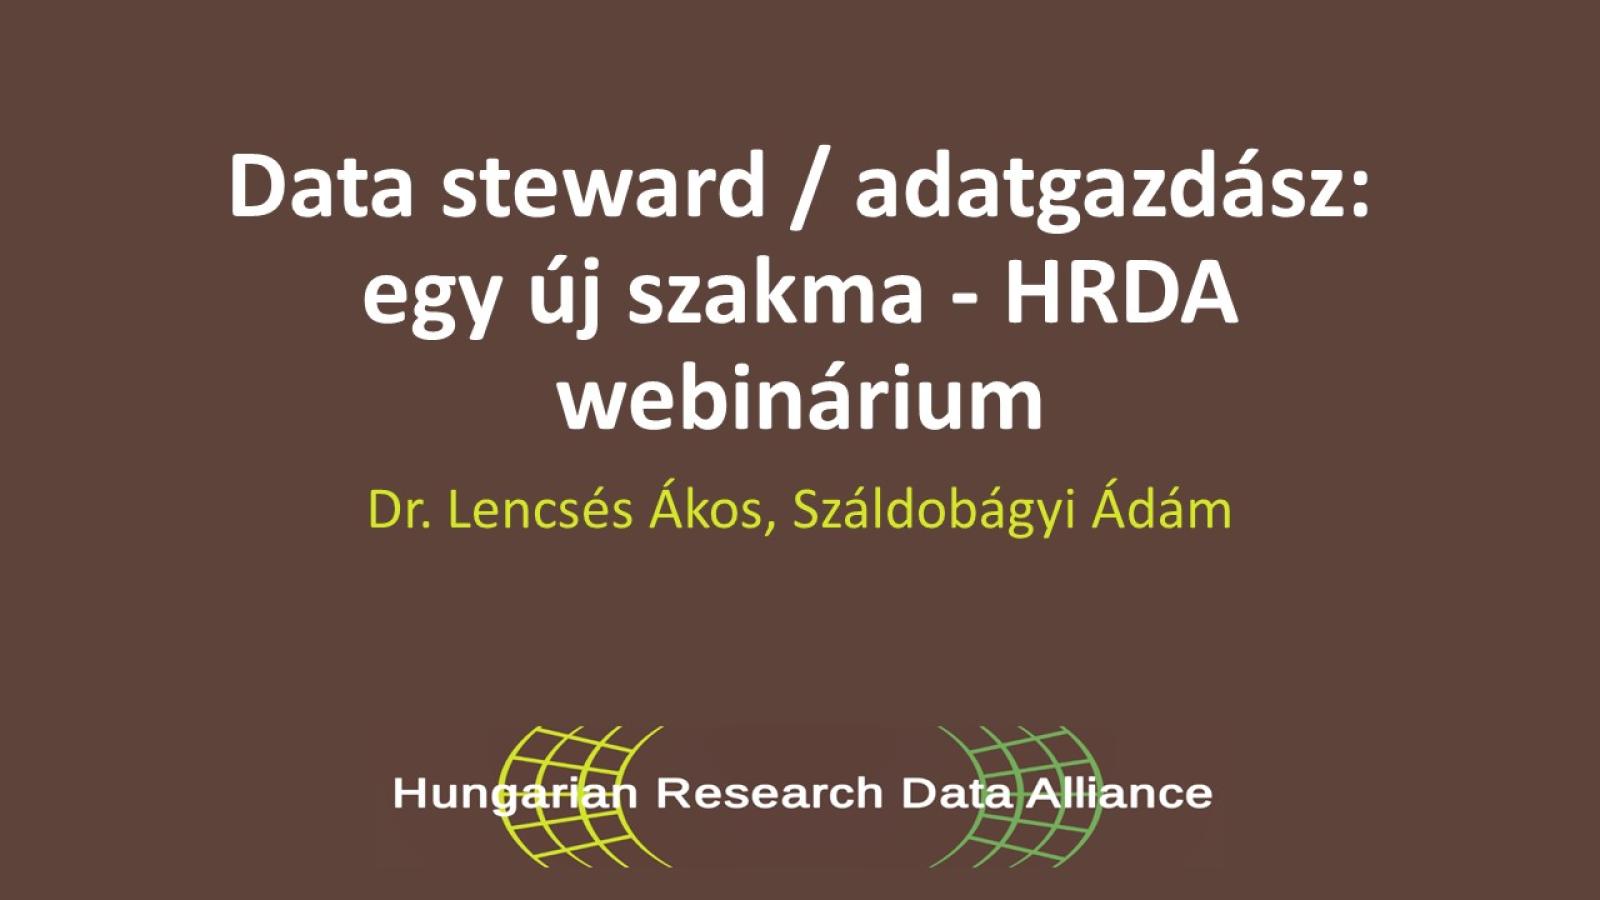 Esemény címe barna háttér előtt fehér betűkkel alul HRDA logó